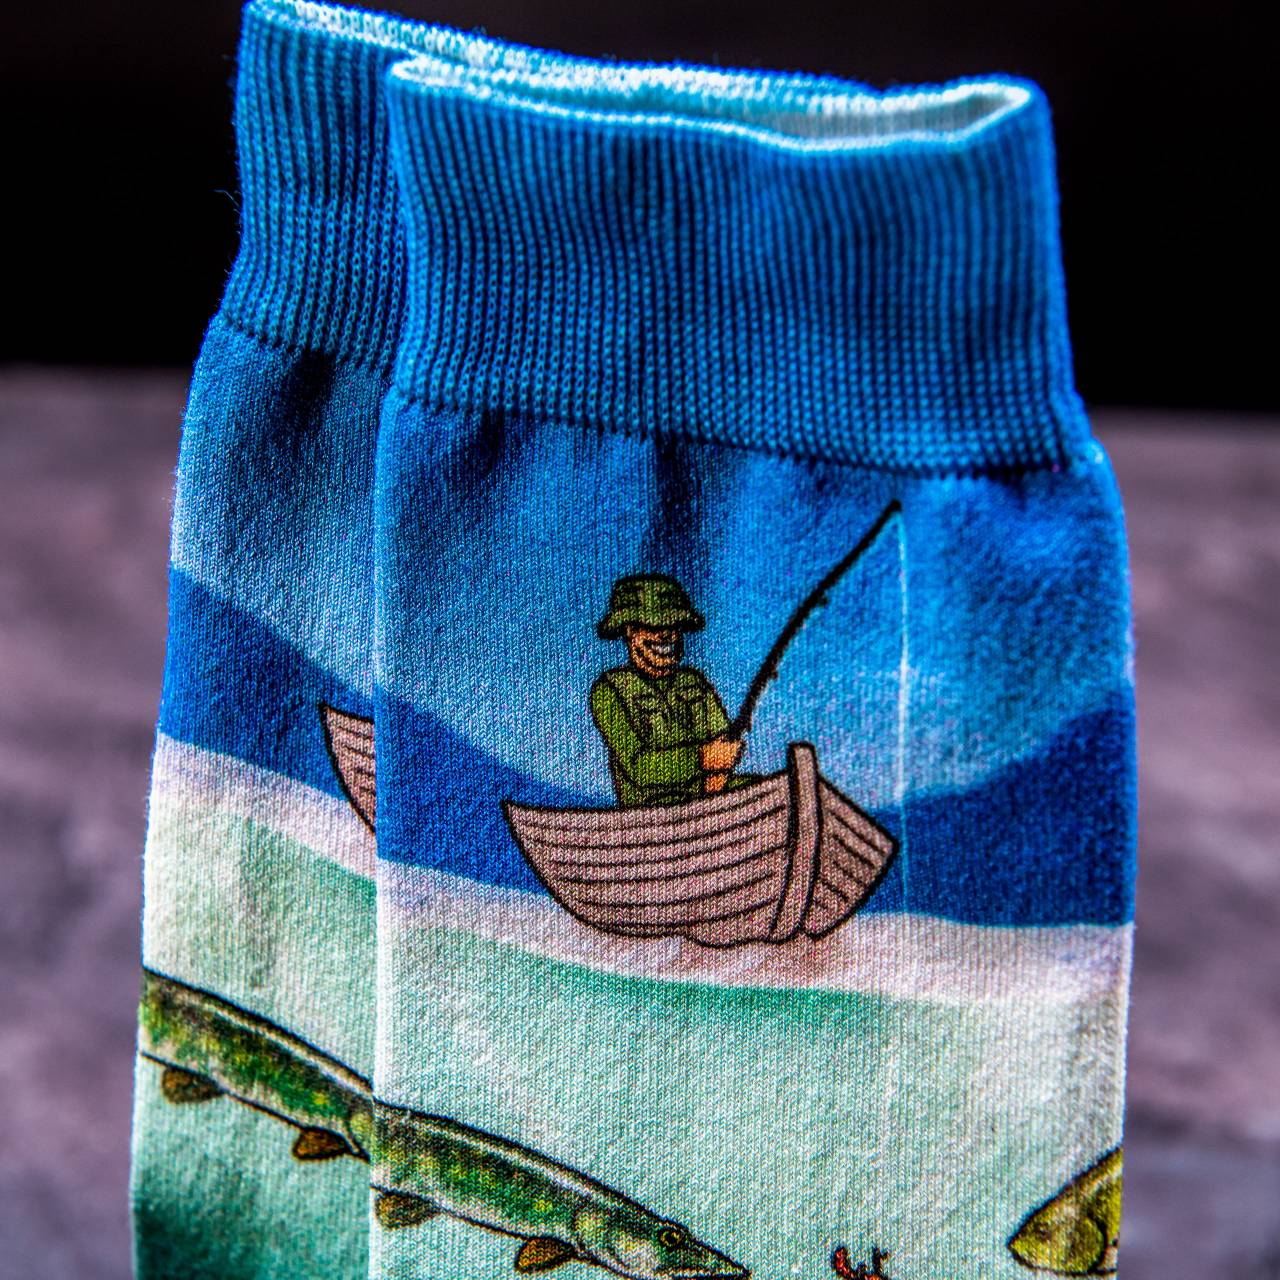 Rybářské ponožky ve stylové plechovce